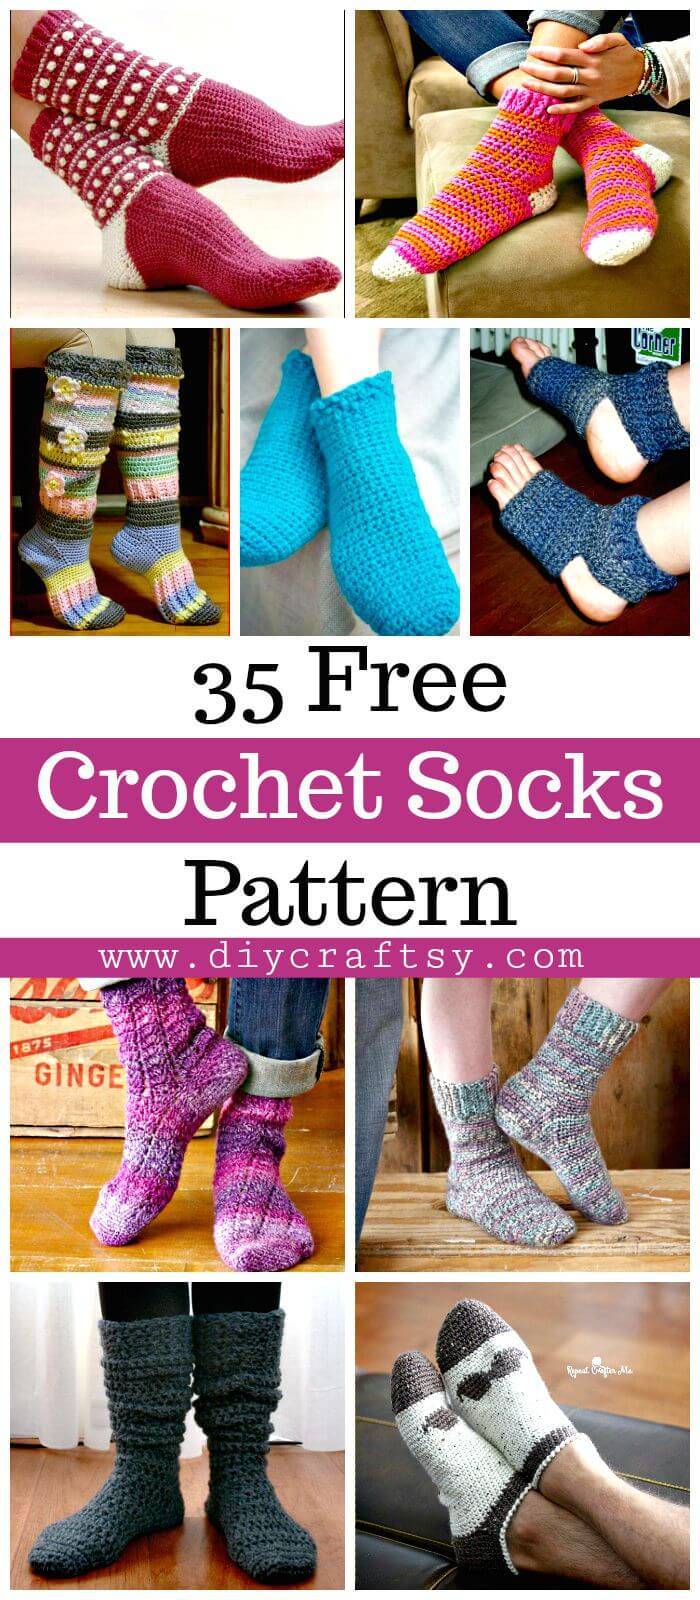 35 Free Crochet Socks Pattern - Crochet Sock Patterns